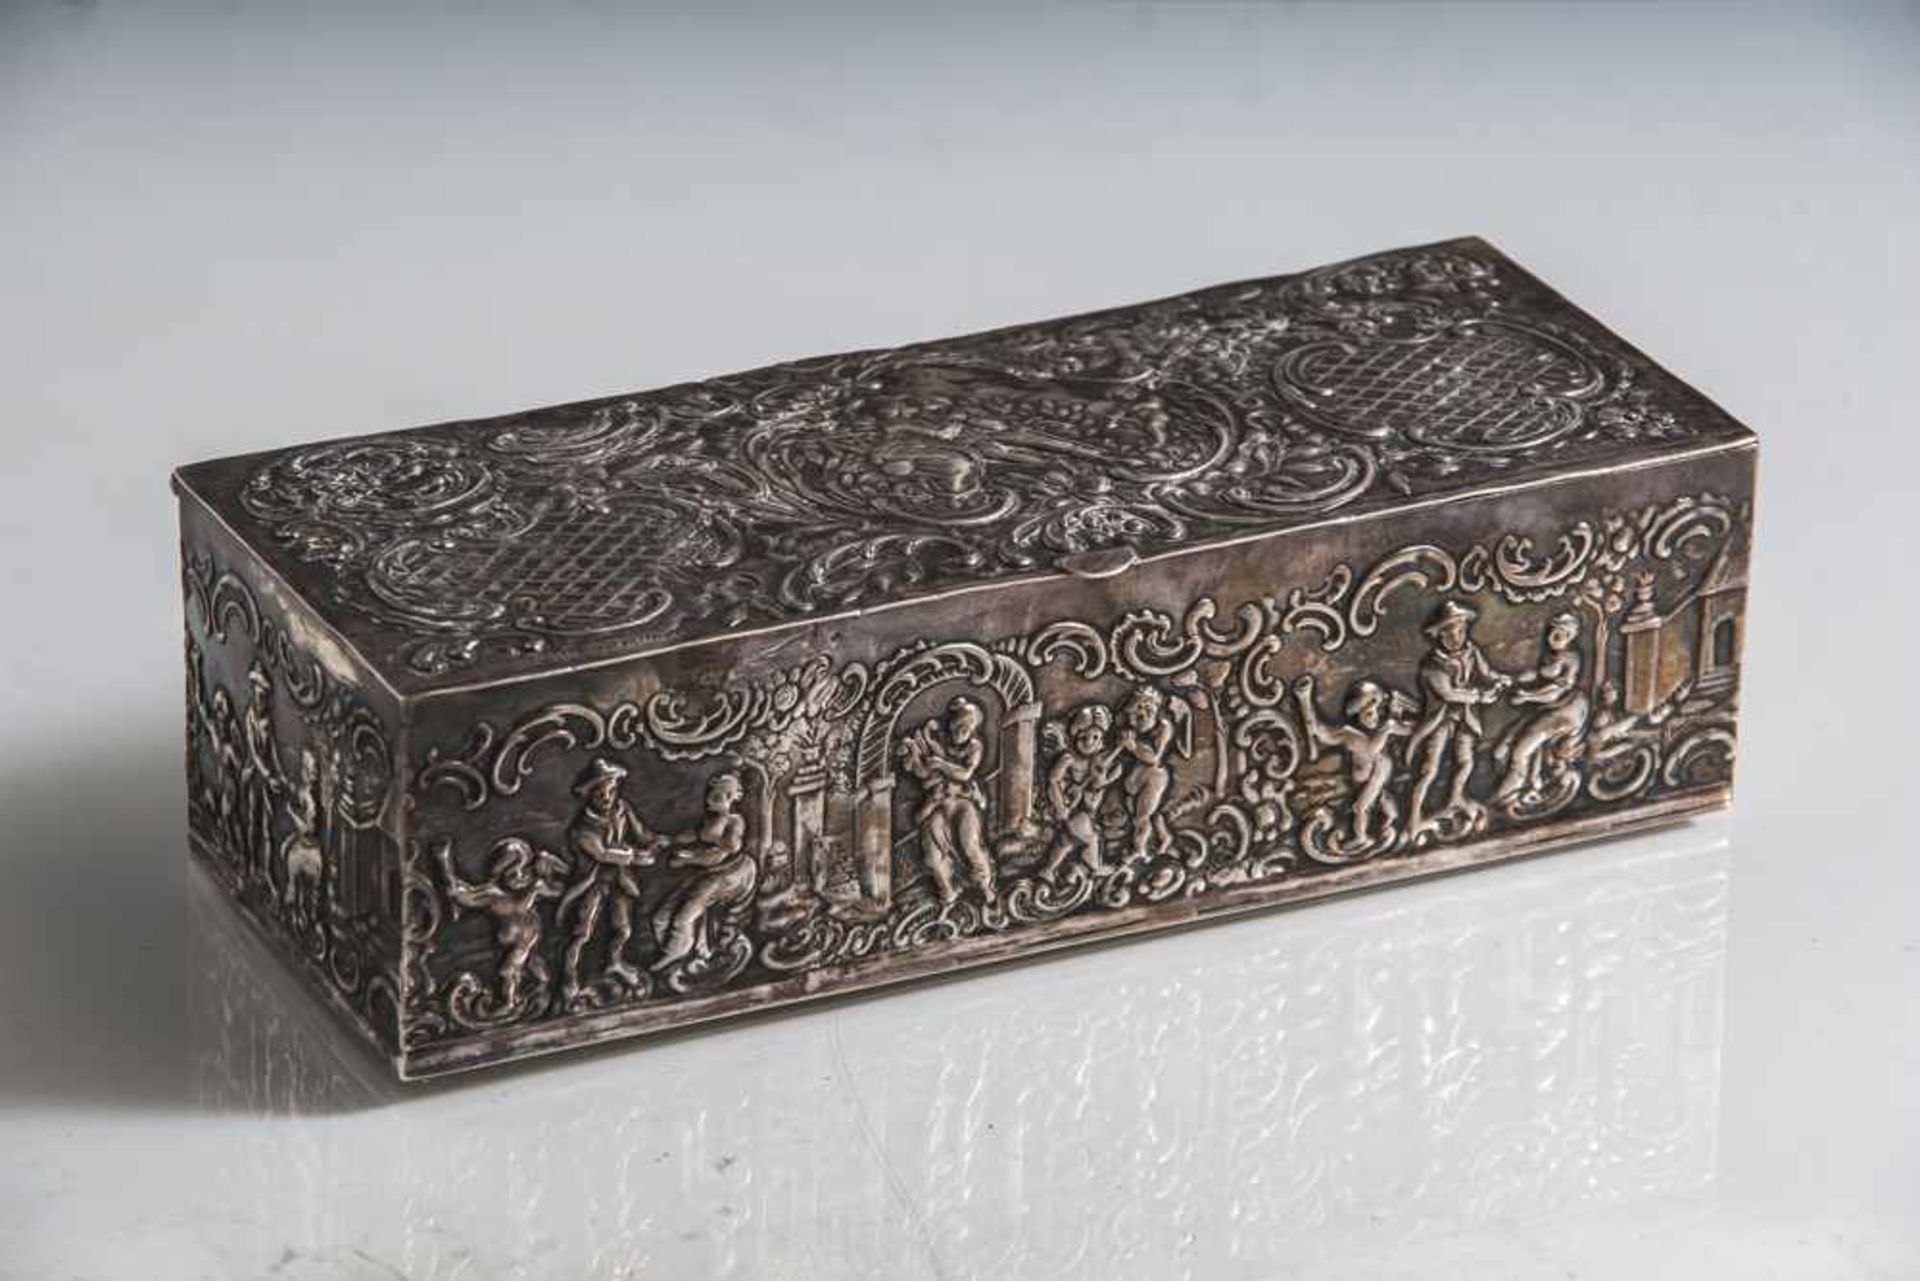 Rechteckige Deckeldose, 19./20. Jahrhundert, Silber, unbekannte Punzen, umlaufend sowie auf Deckel